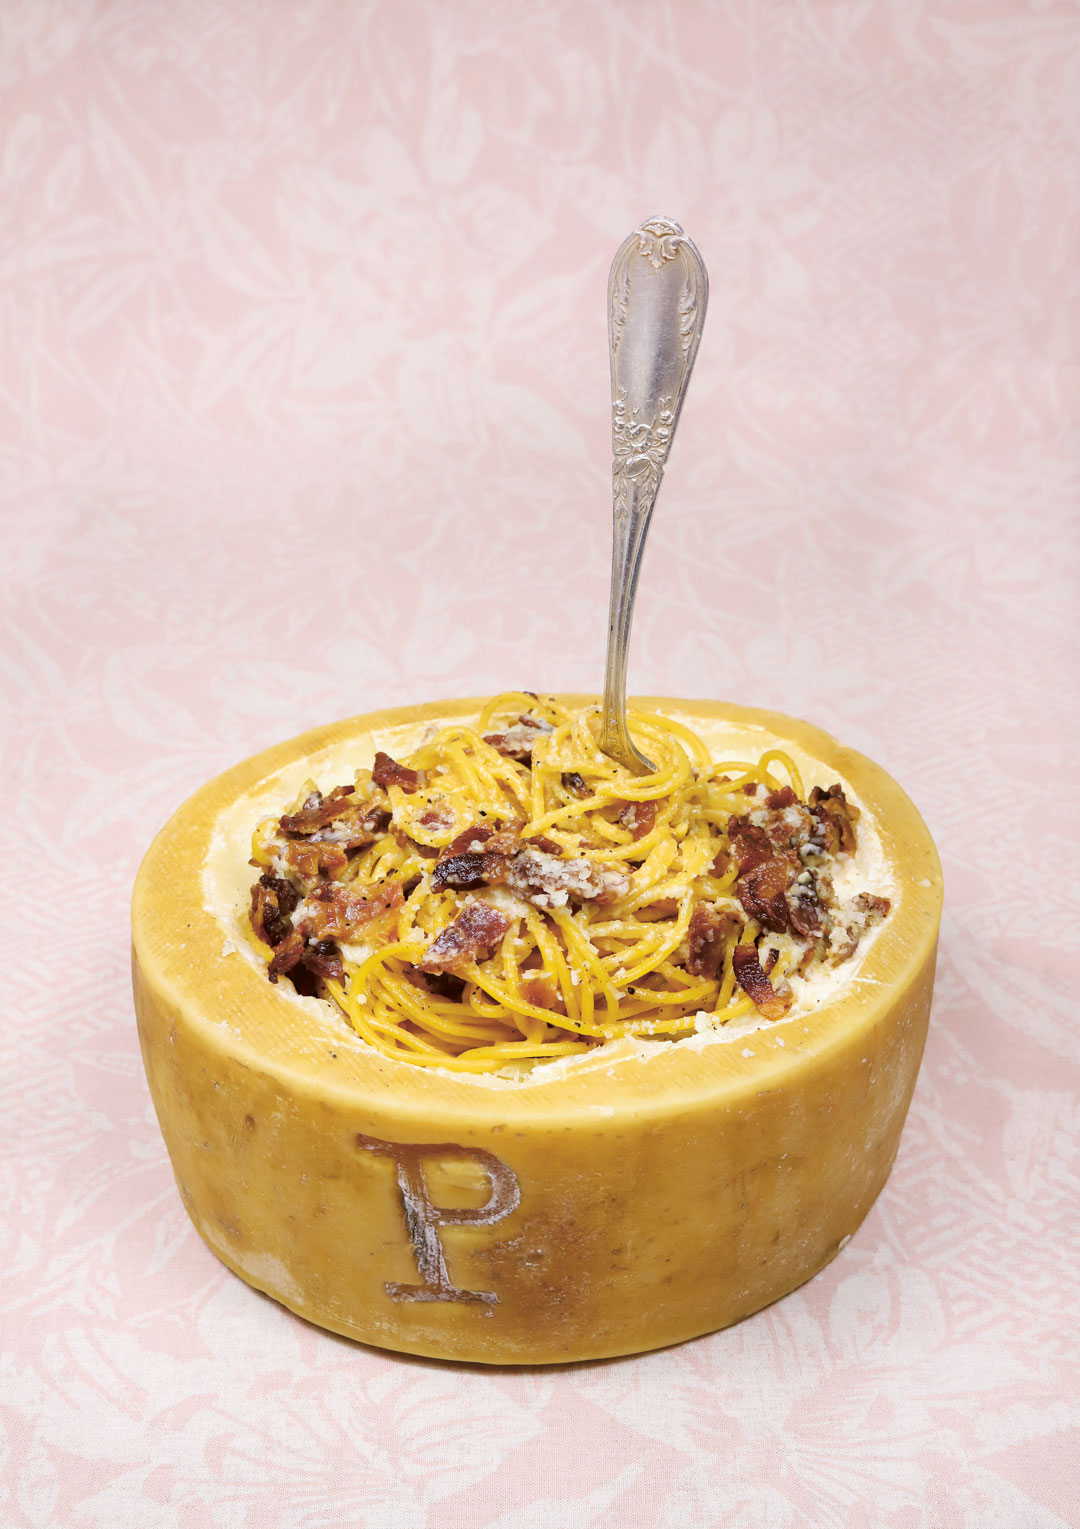 La Gran Carbonara (Spaghetti carbonara). All dishes from Big Mamma Cucina Popolare